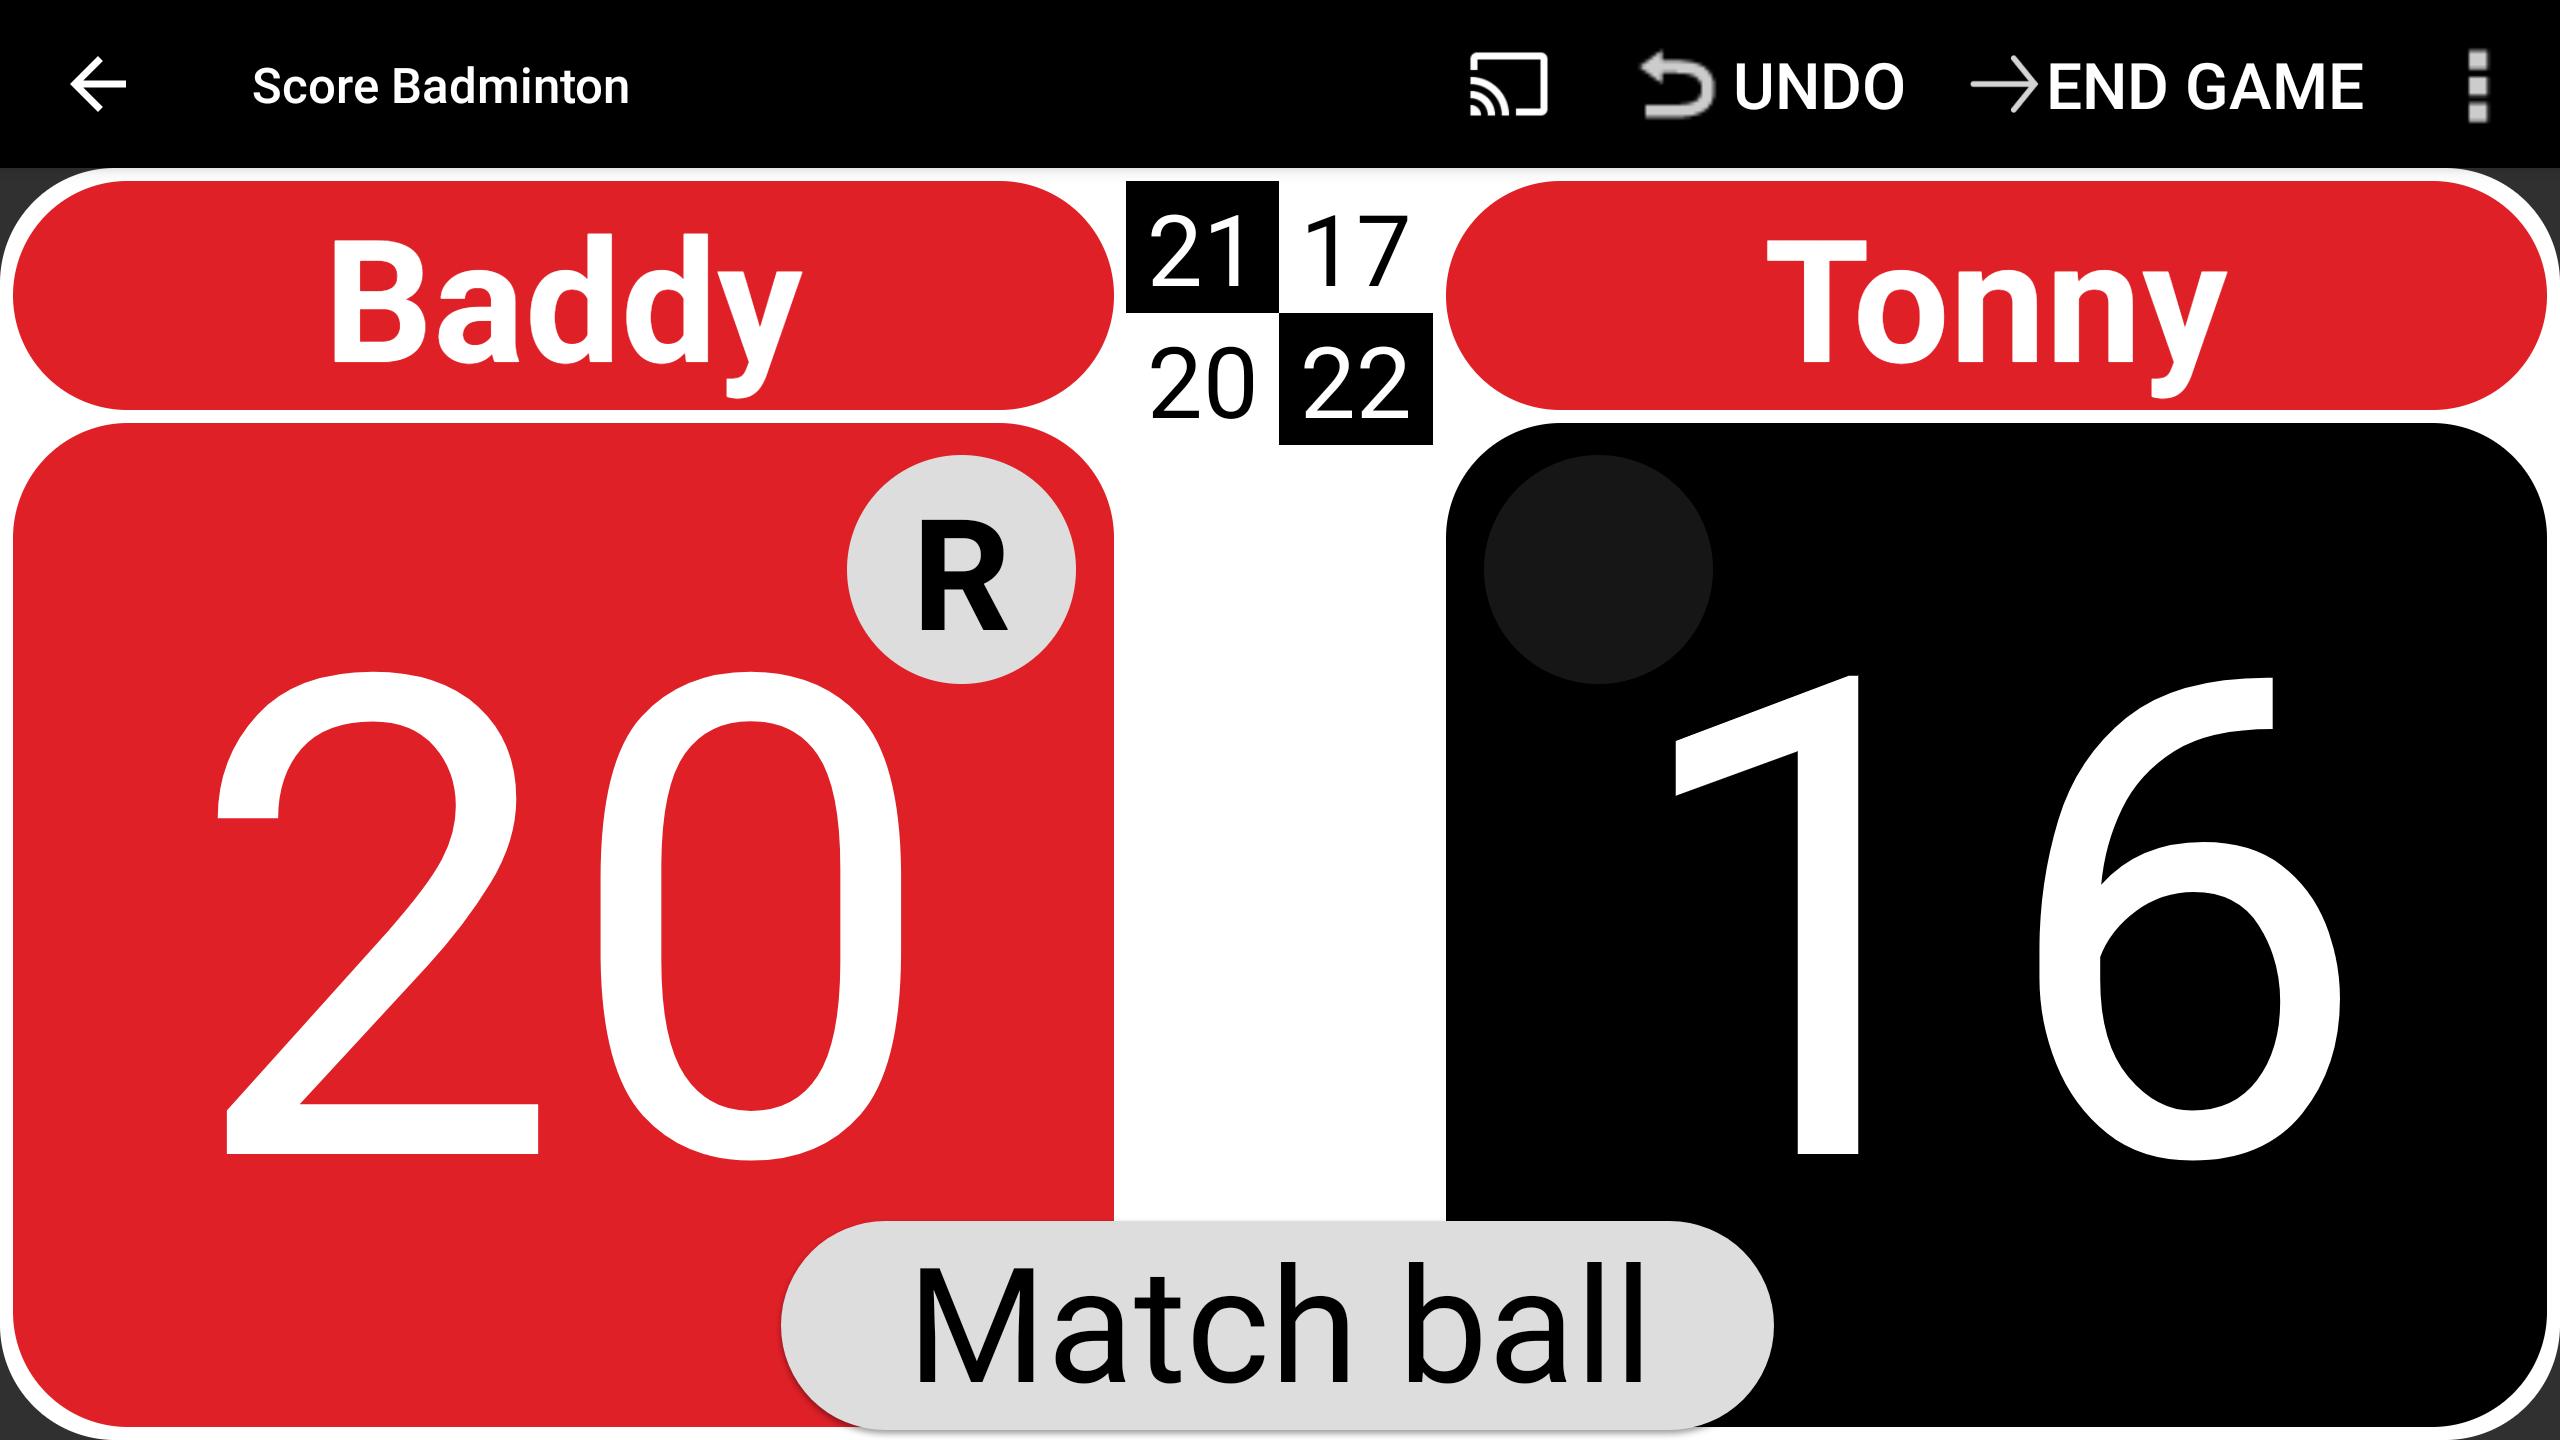 Score Badminton pour Android - Téléchargez l'APK